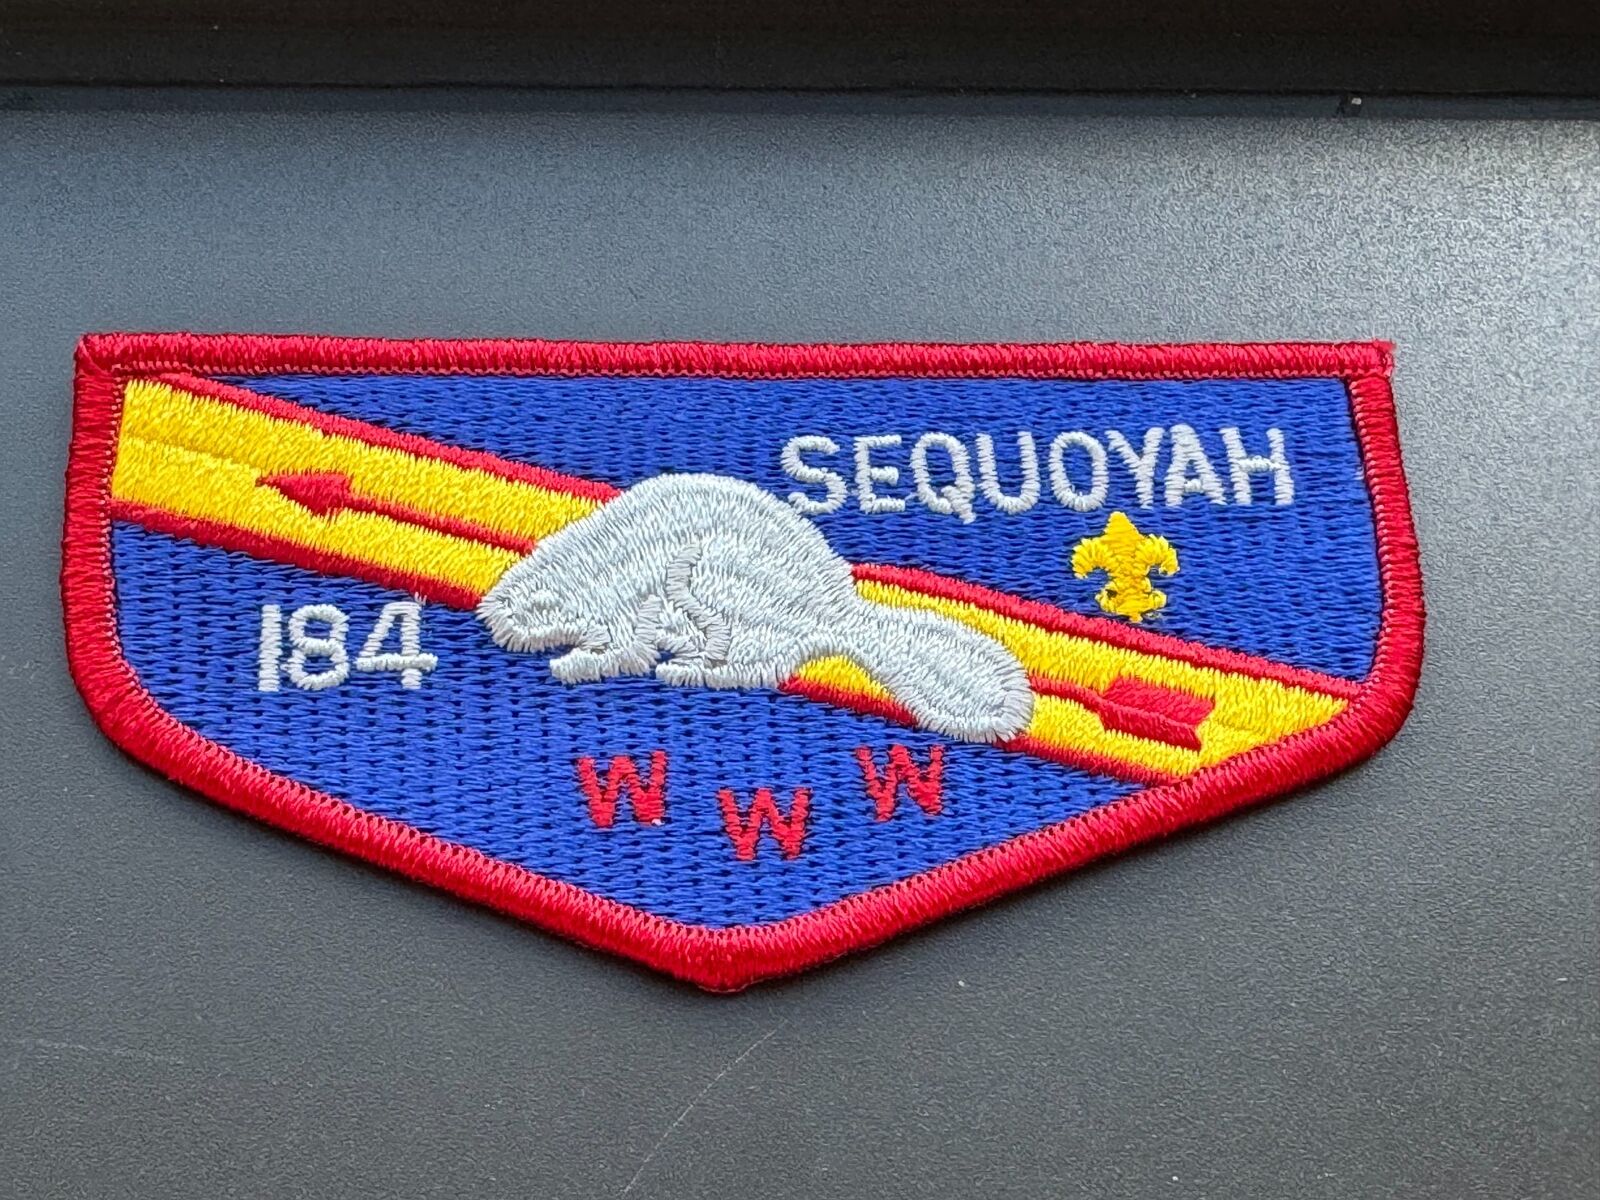 OA, Sequoyah (184) Flap (S-21)